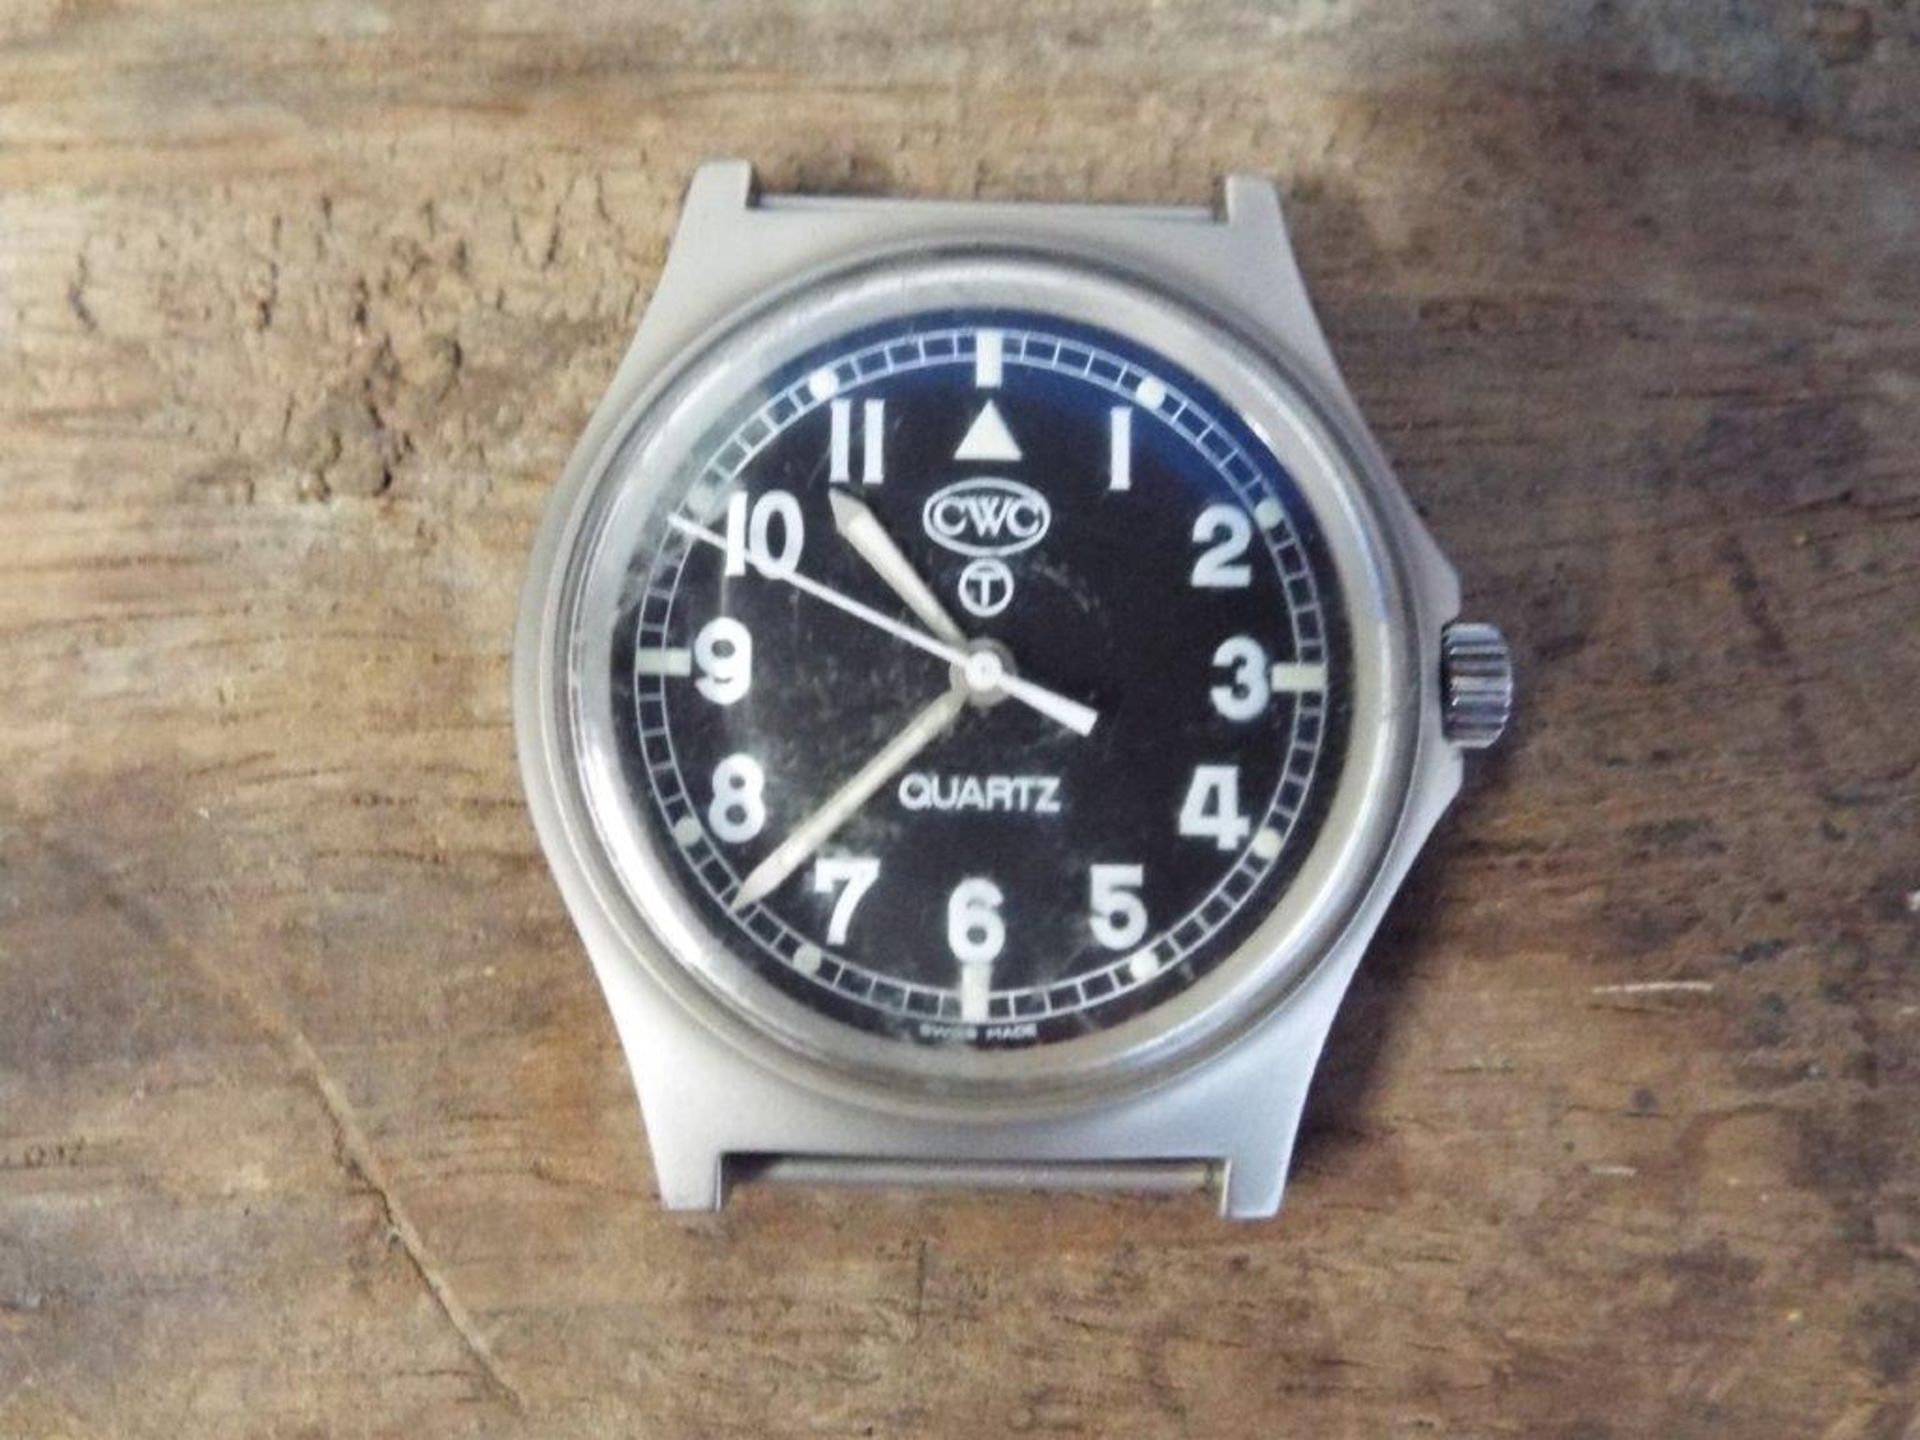 Genuine British Army, CWC Quartz Wrist Watch. - Bild 6 aus 8